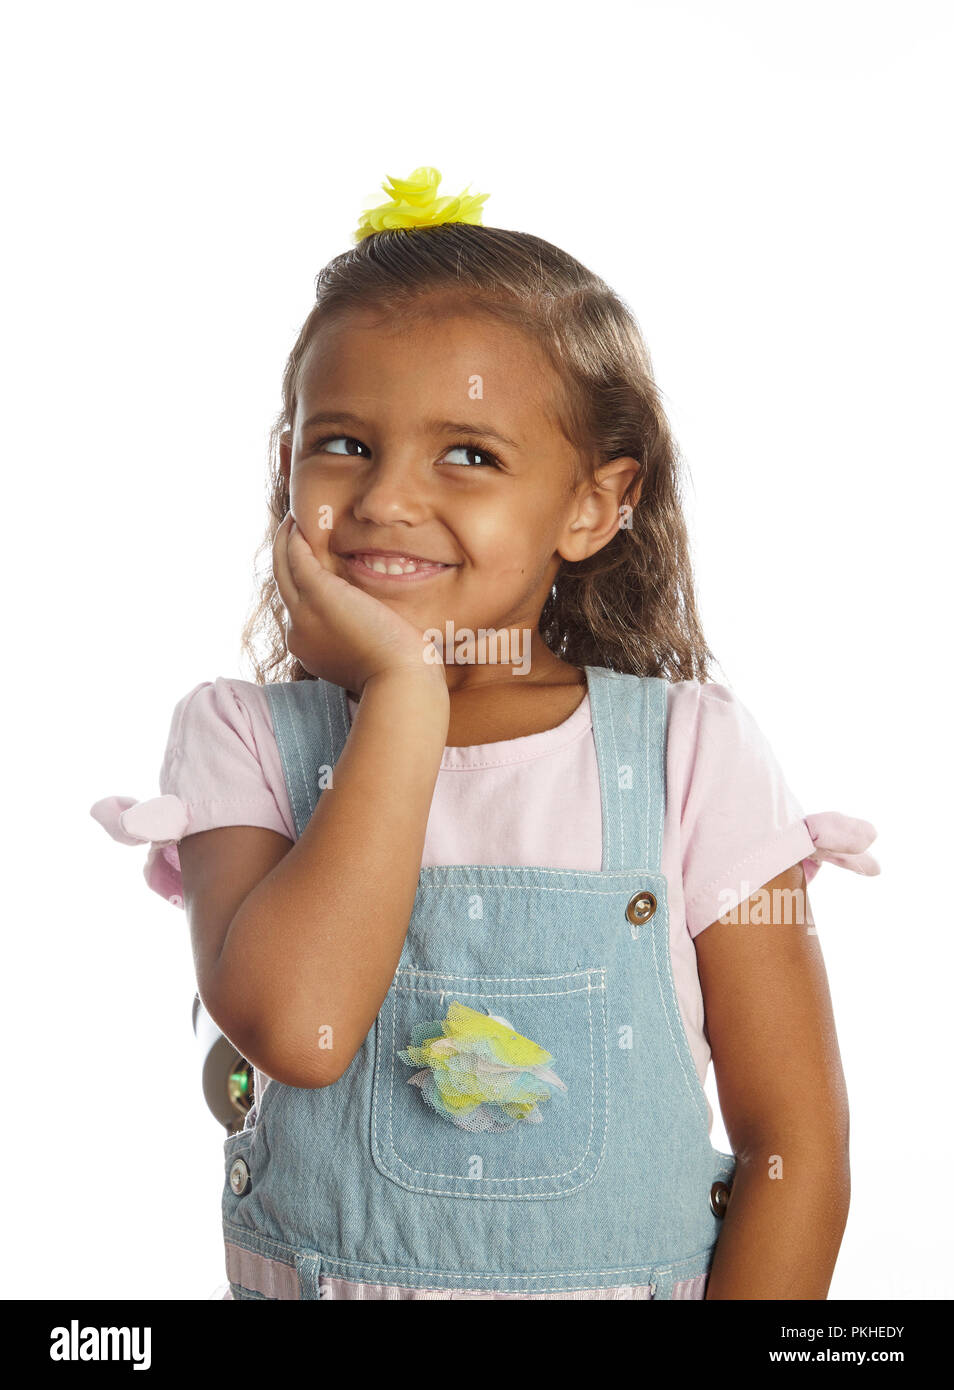 little girl in overalls Stock Photo